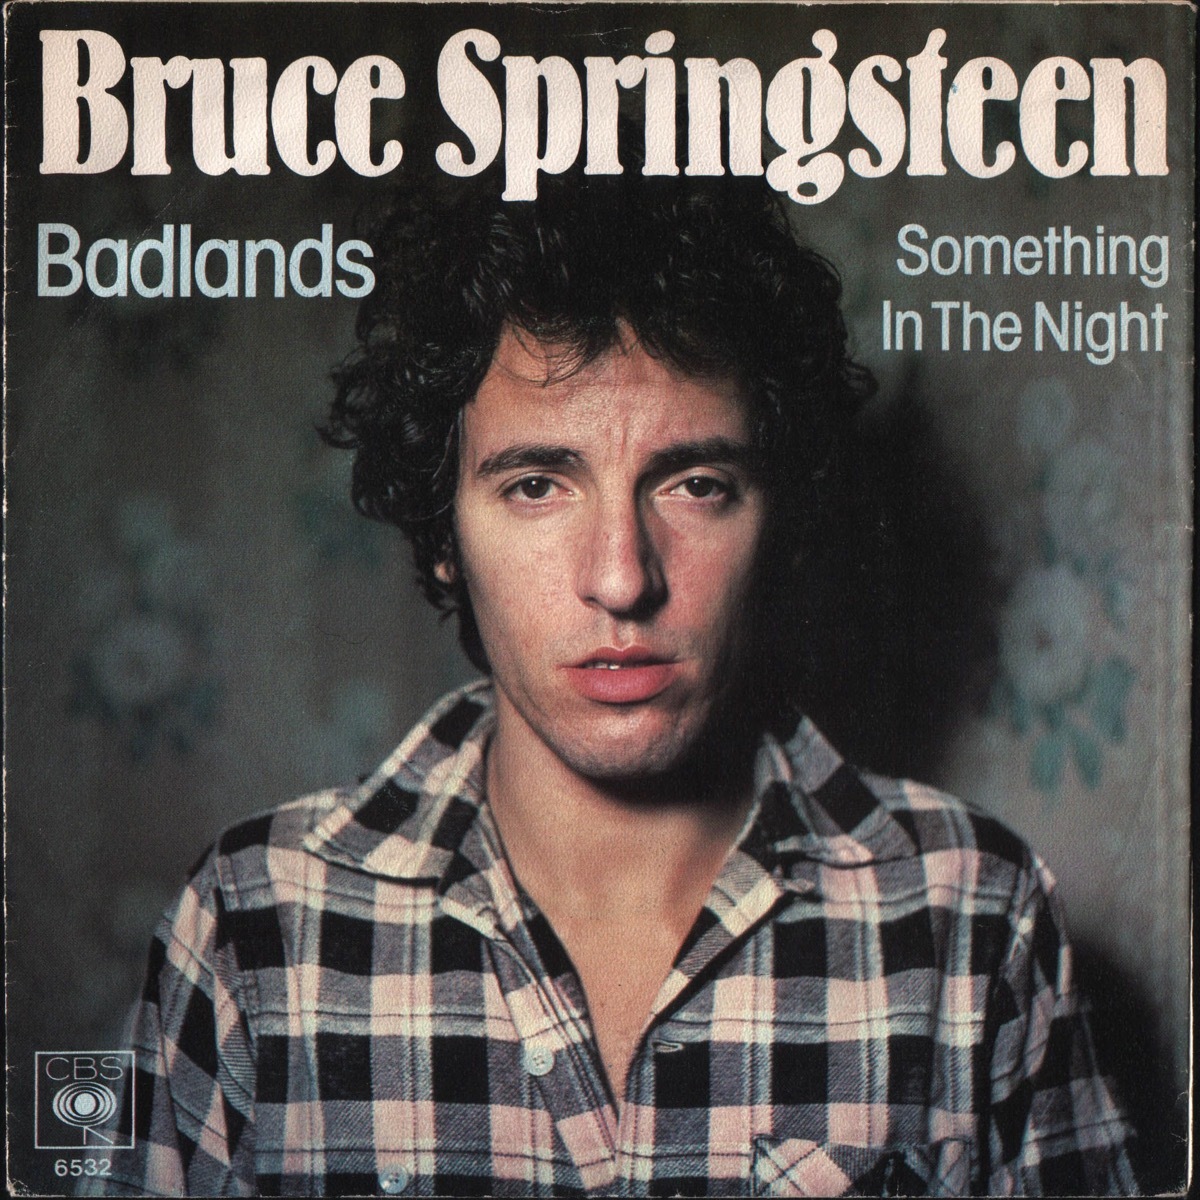 Badlands by Bruce Springsteen